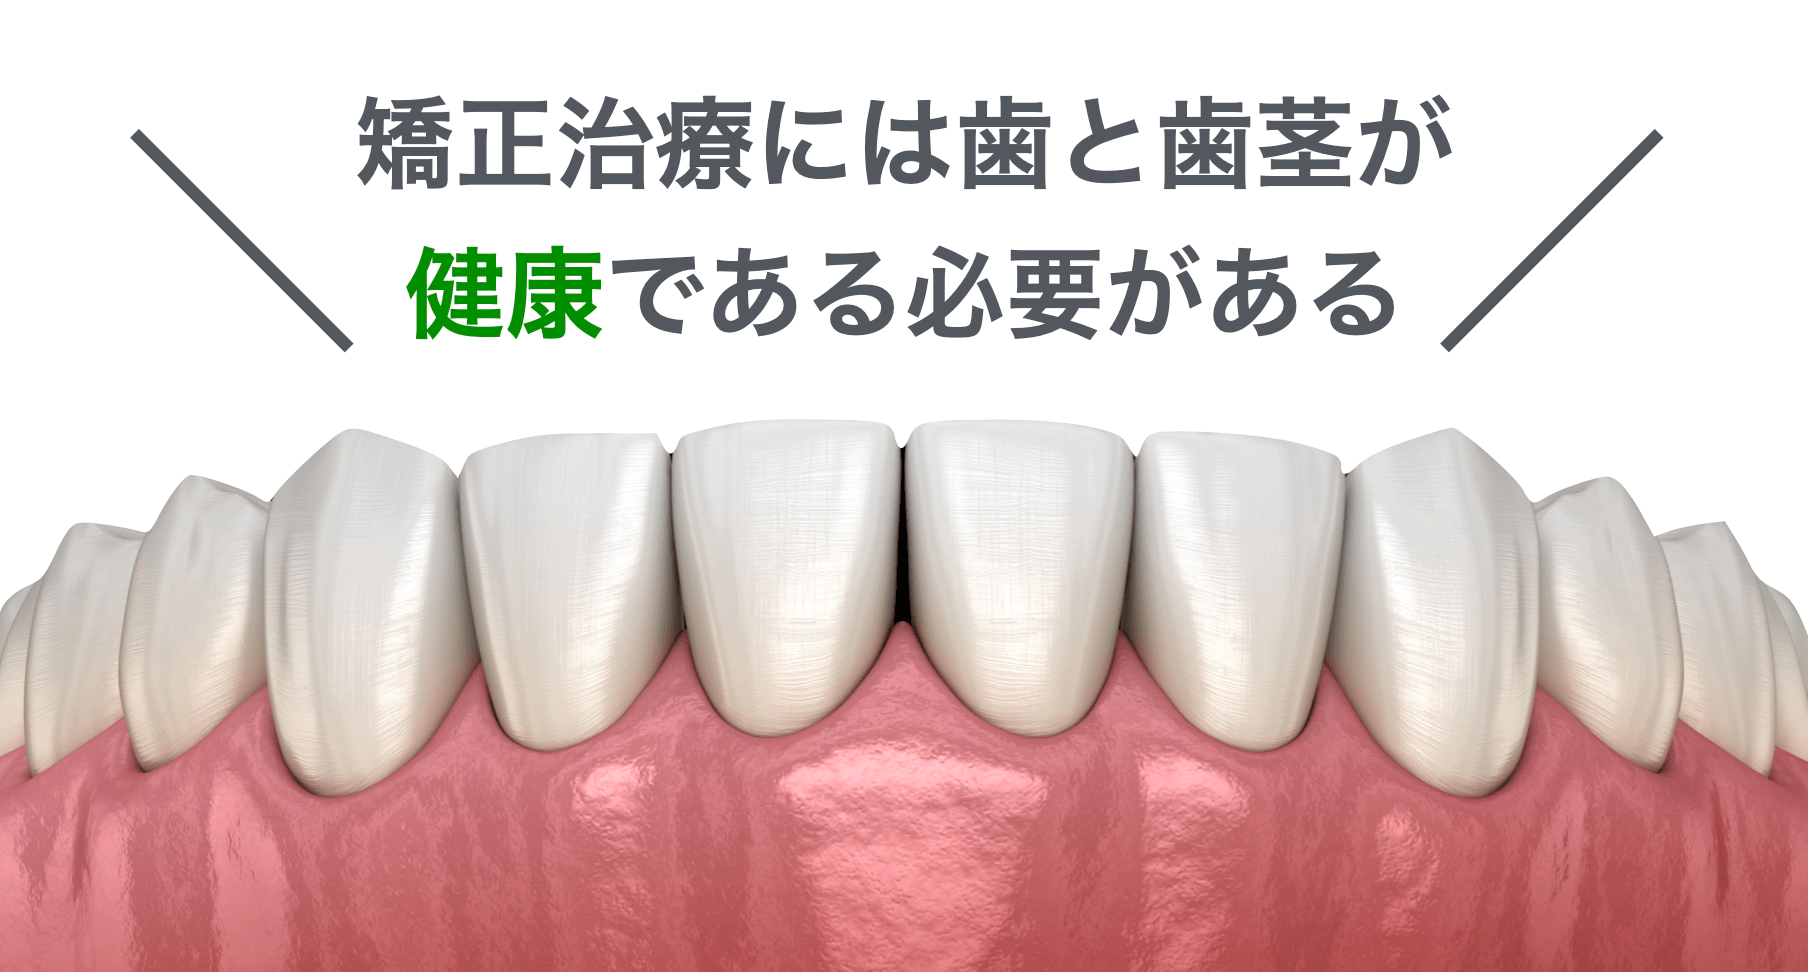 矯正治療には健康な歯と歯茎が必要